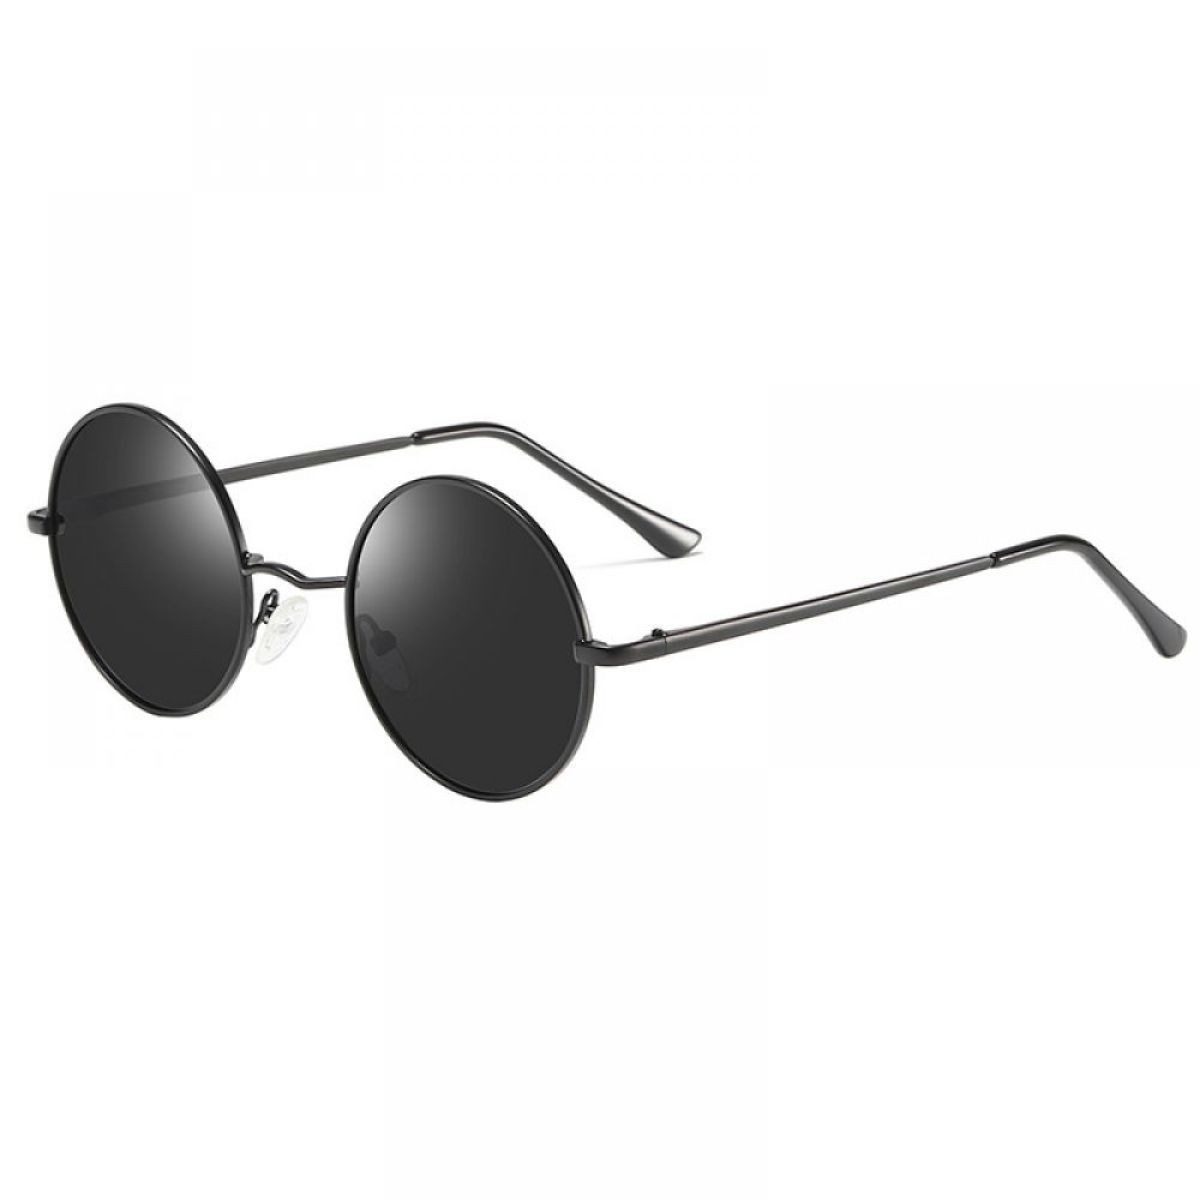 Rnemitery Sonnenbrille Klassische Polarisierte brille Herren Damen Retro Runde Sonnenbrille